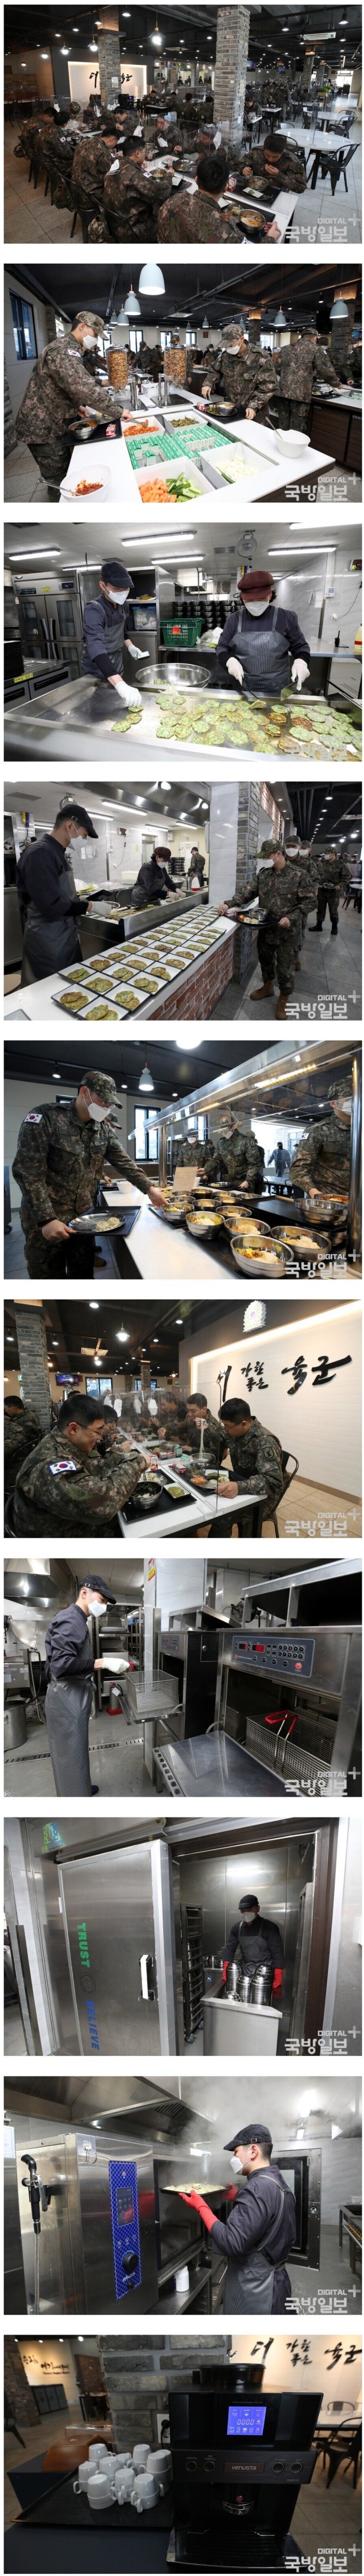 시범 운영중인 군대 식당.jpg